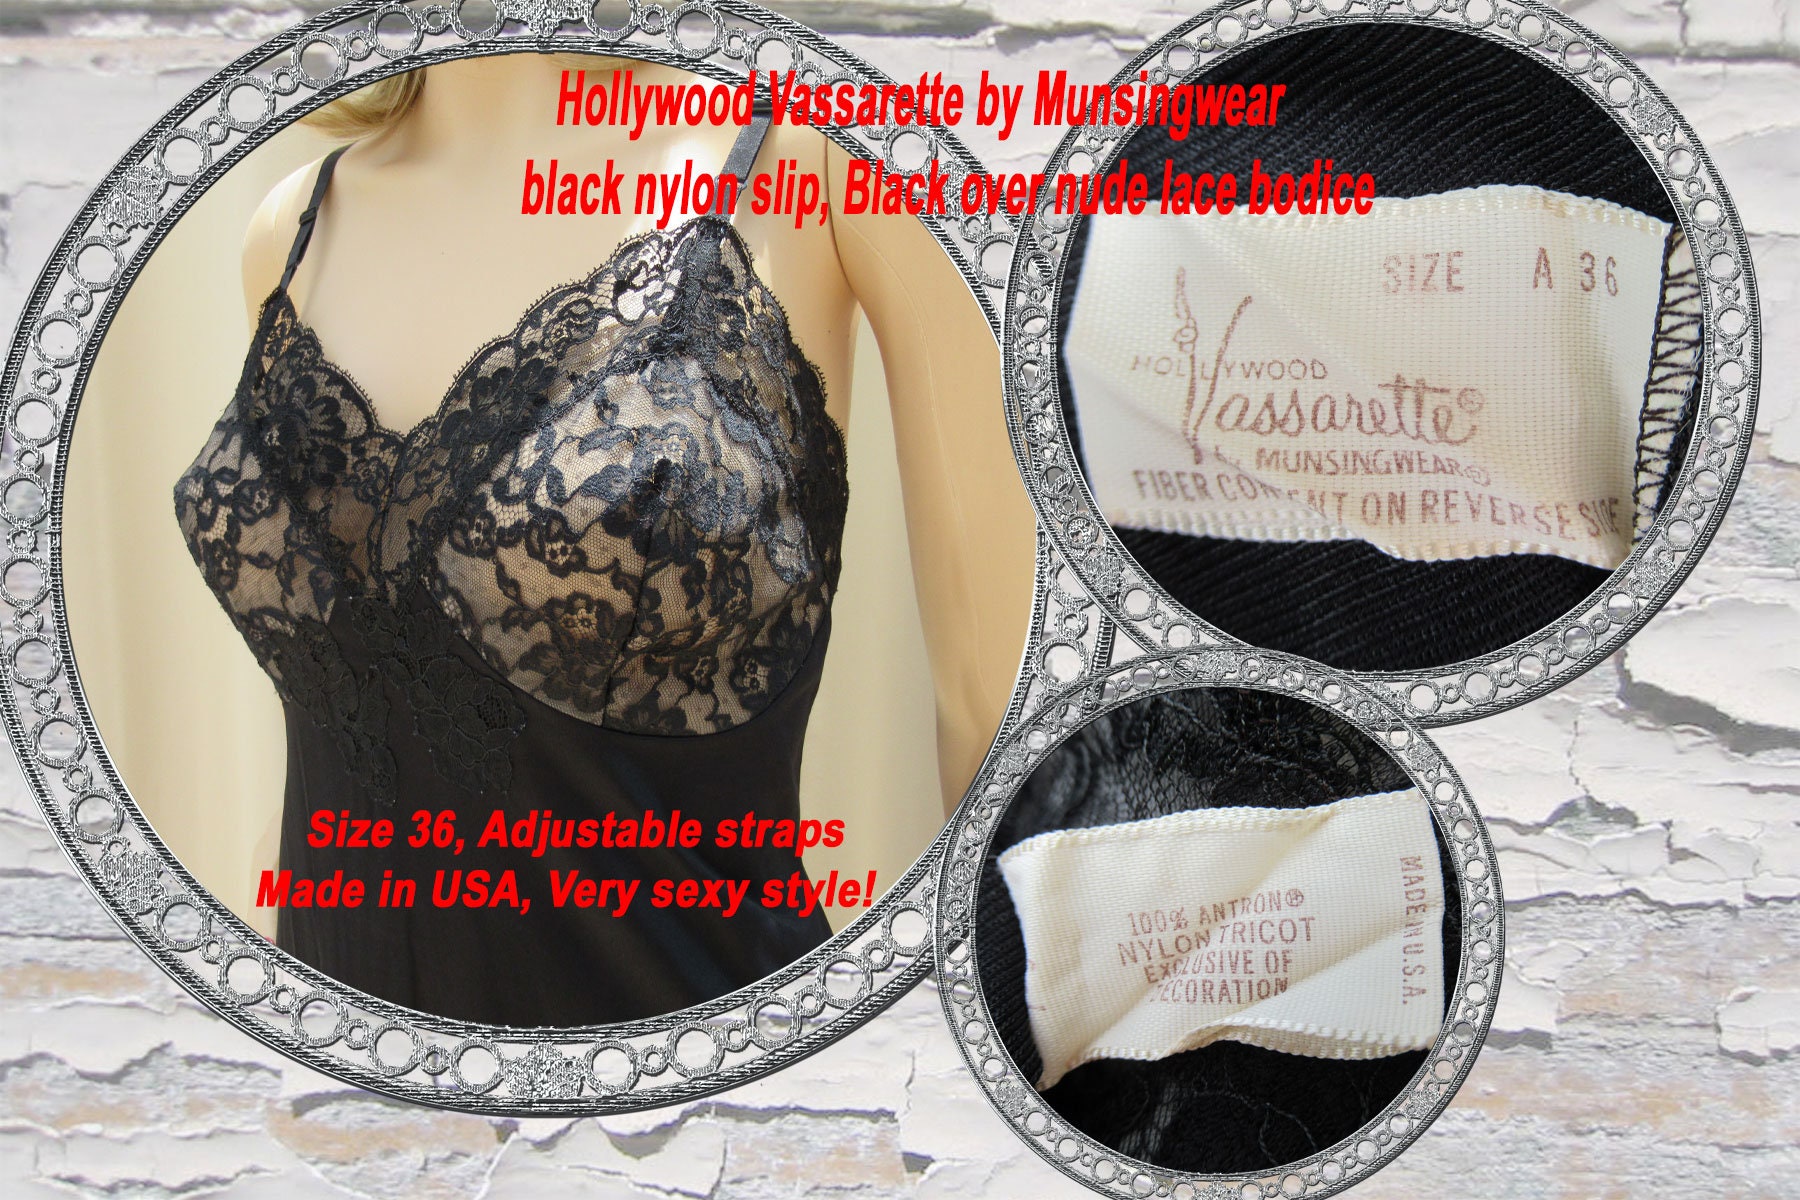 Hollywood Vassarette by Munsingwear Black Nylon Slip, Black Over